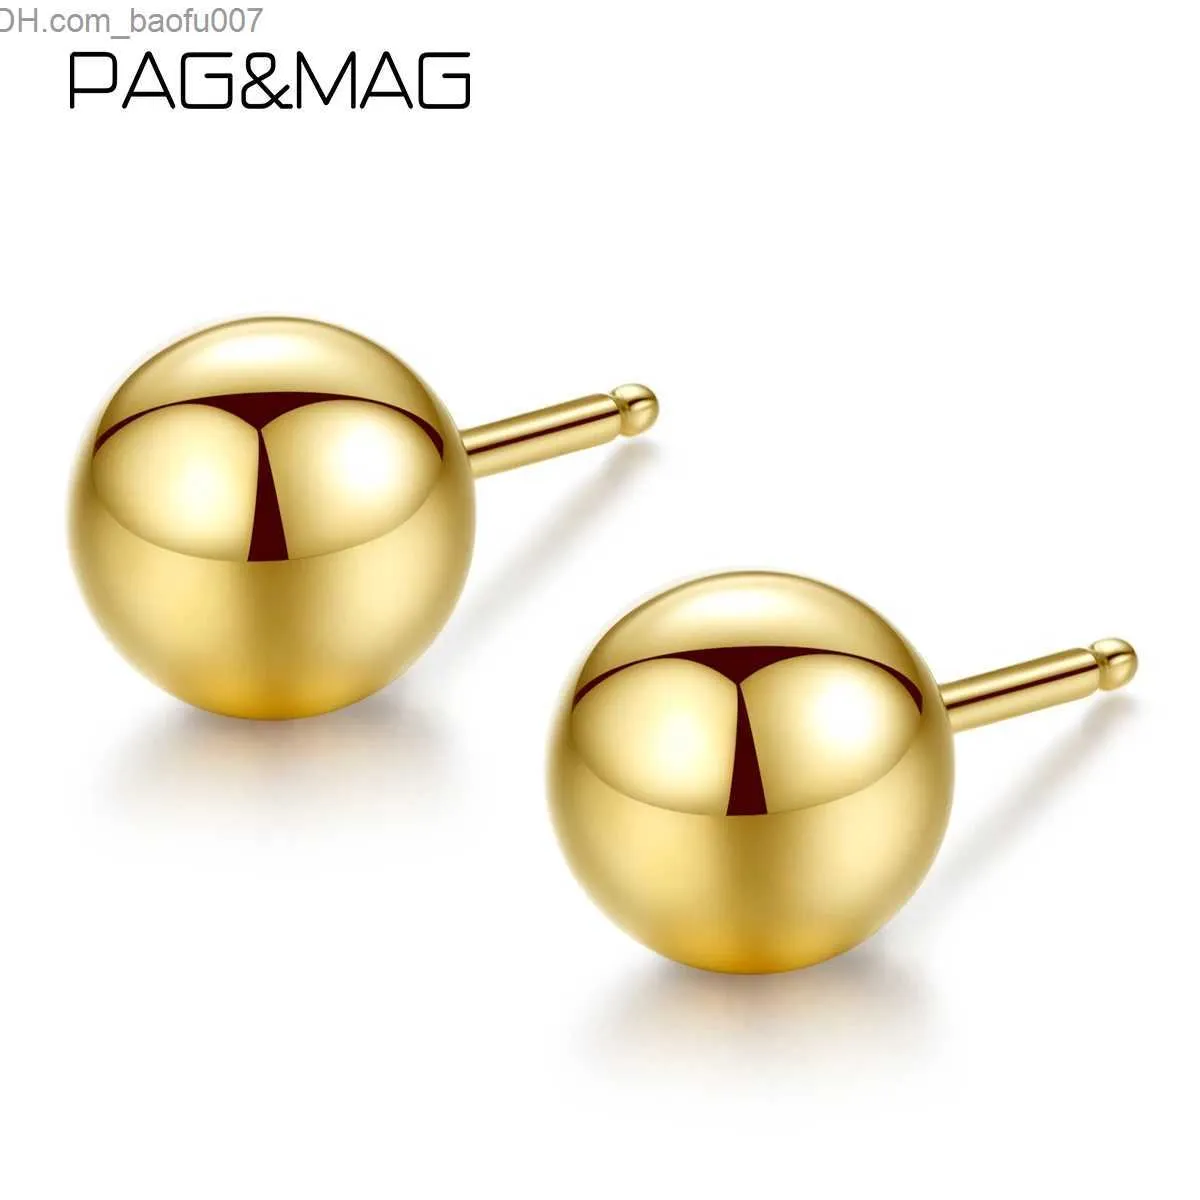 Charm Pag Mag oryginalny 18 -krotny czysty złota stadnina stadnina minimalizm srebrne złoto stadnina biżuteria wisior z230713